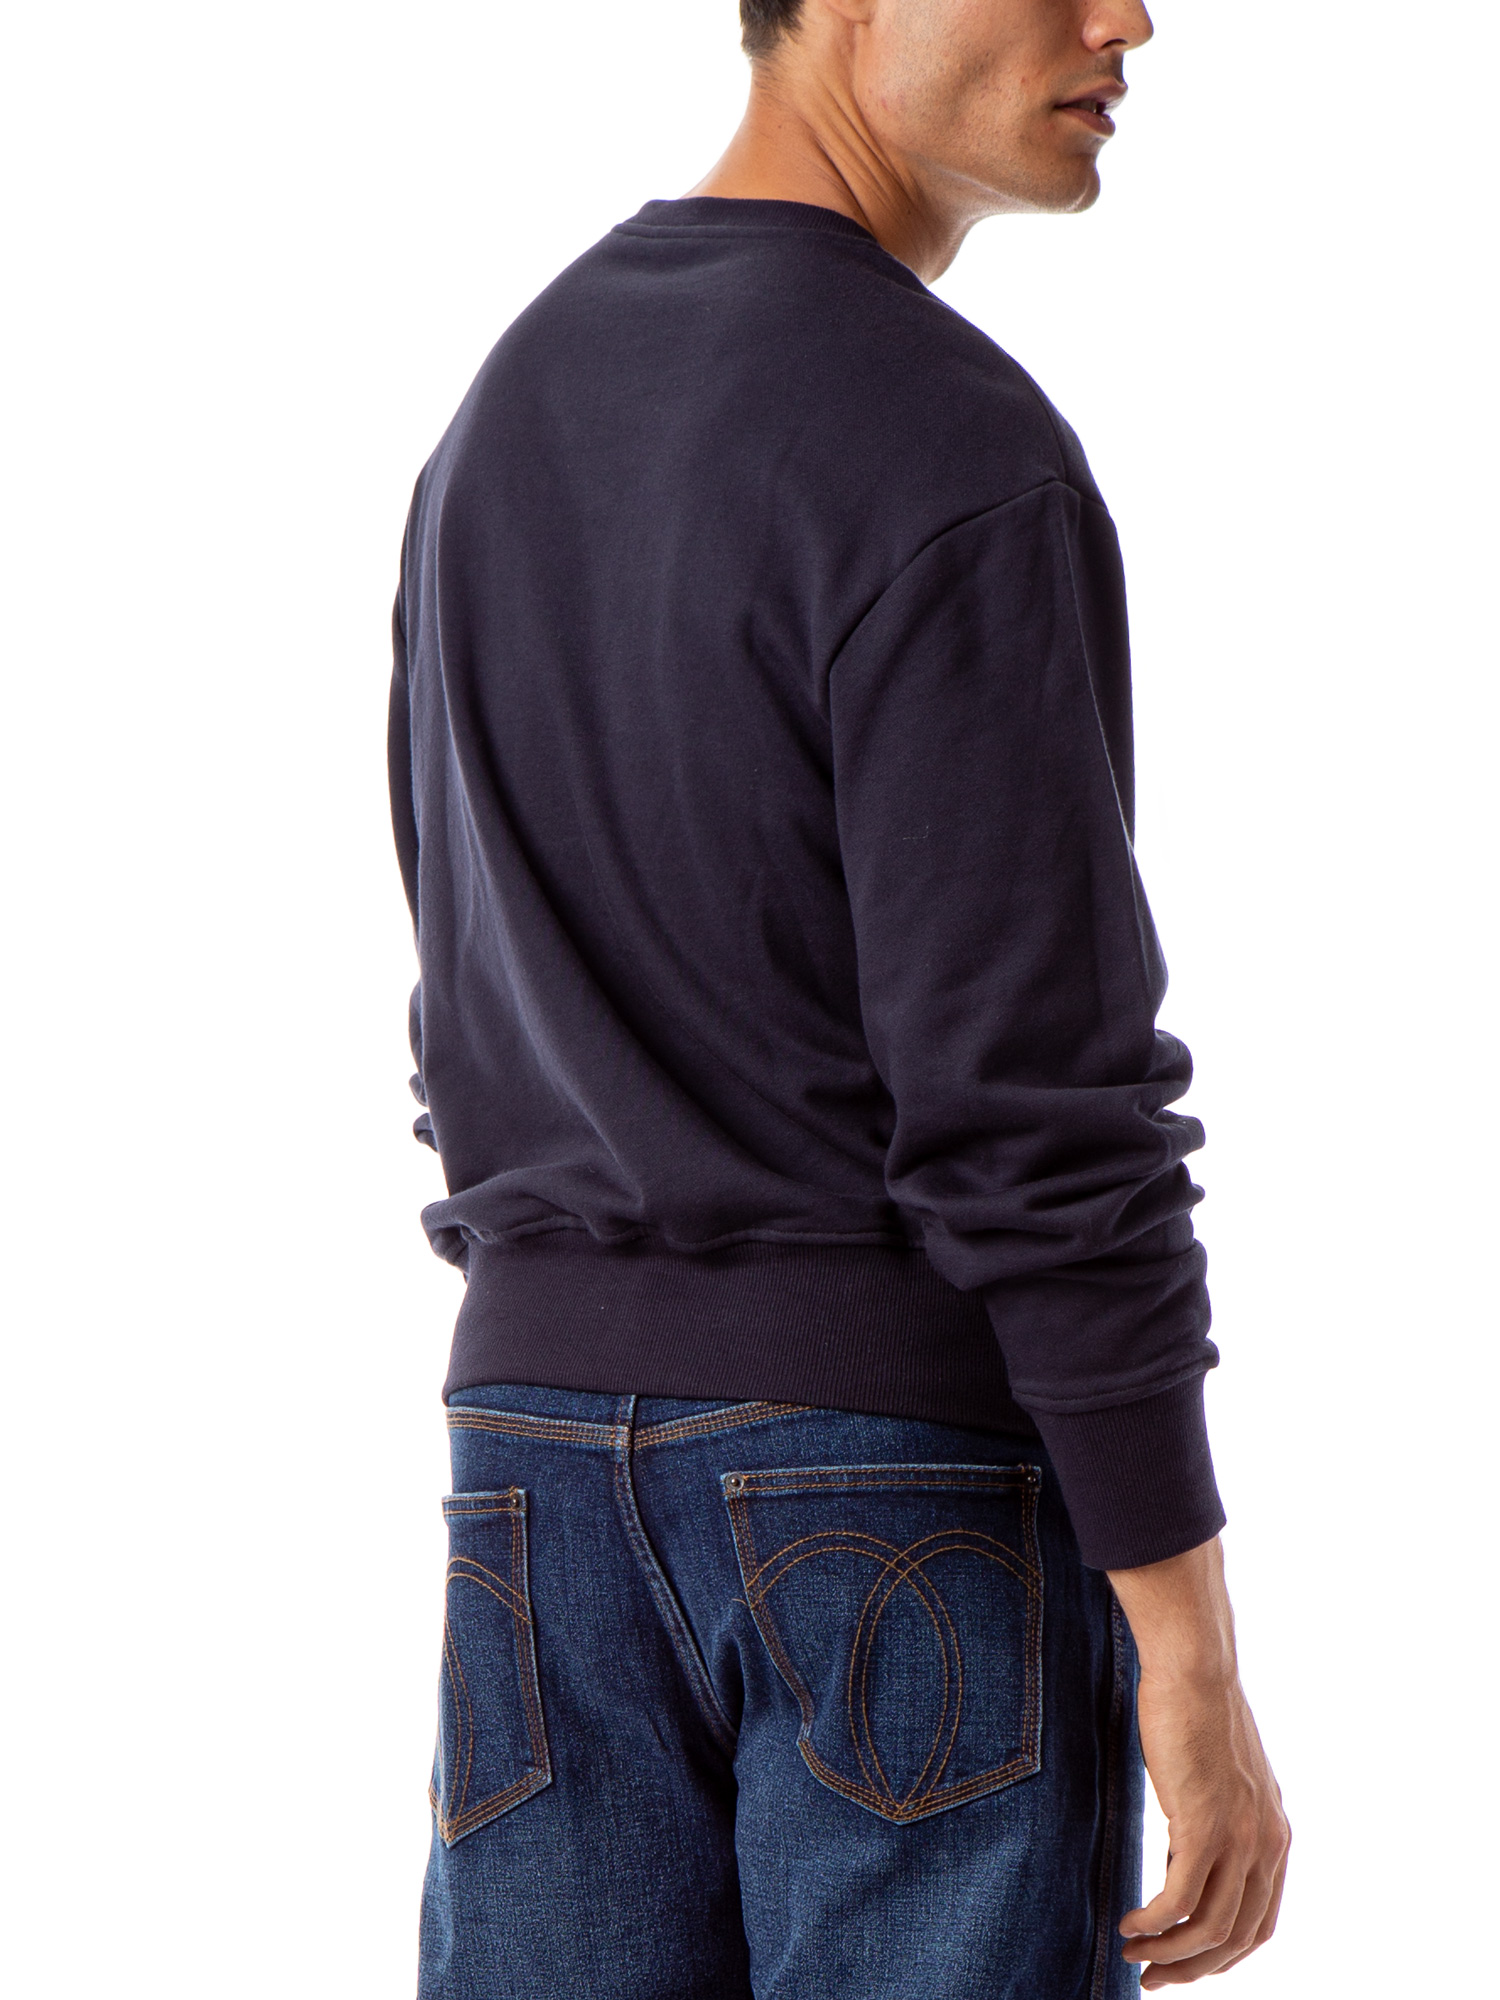 Jordache Vintage Men's Aaron Colorblocked Sweatshirt - image 4 of 5